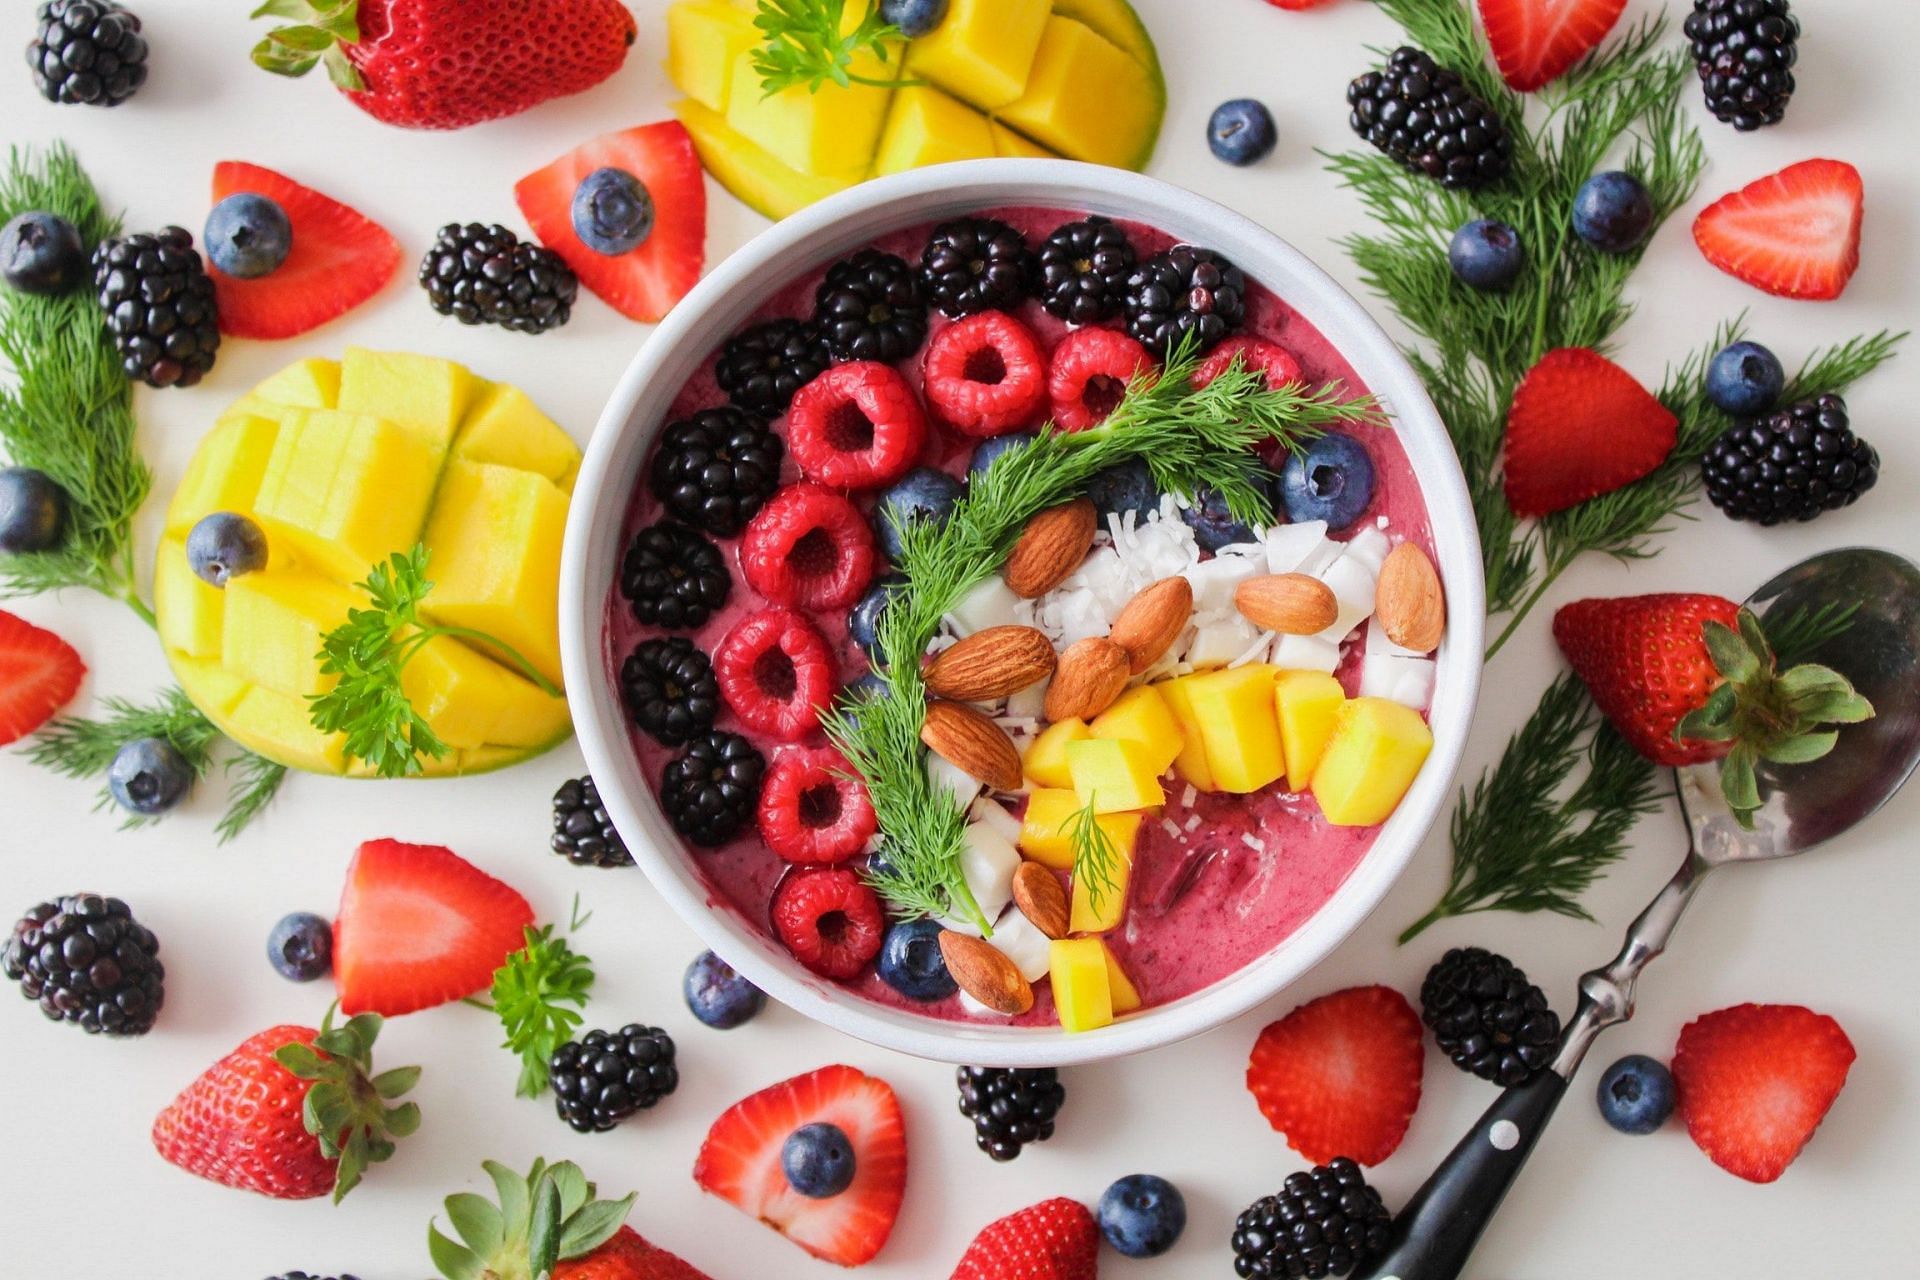 Berries can be included in gestational diabetes diet (Image via Pexels/Jane Doan)